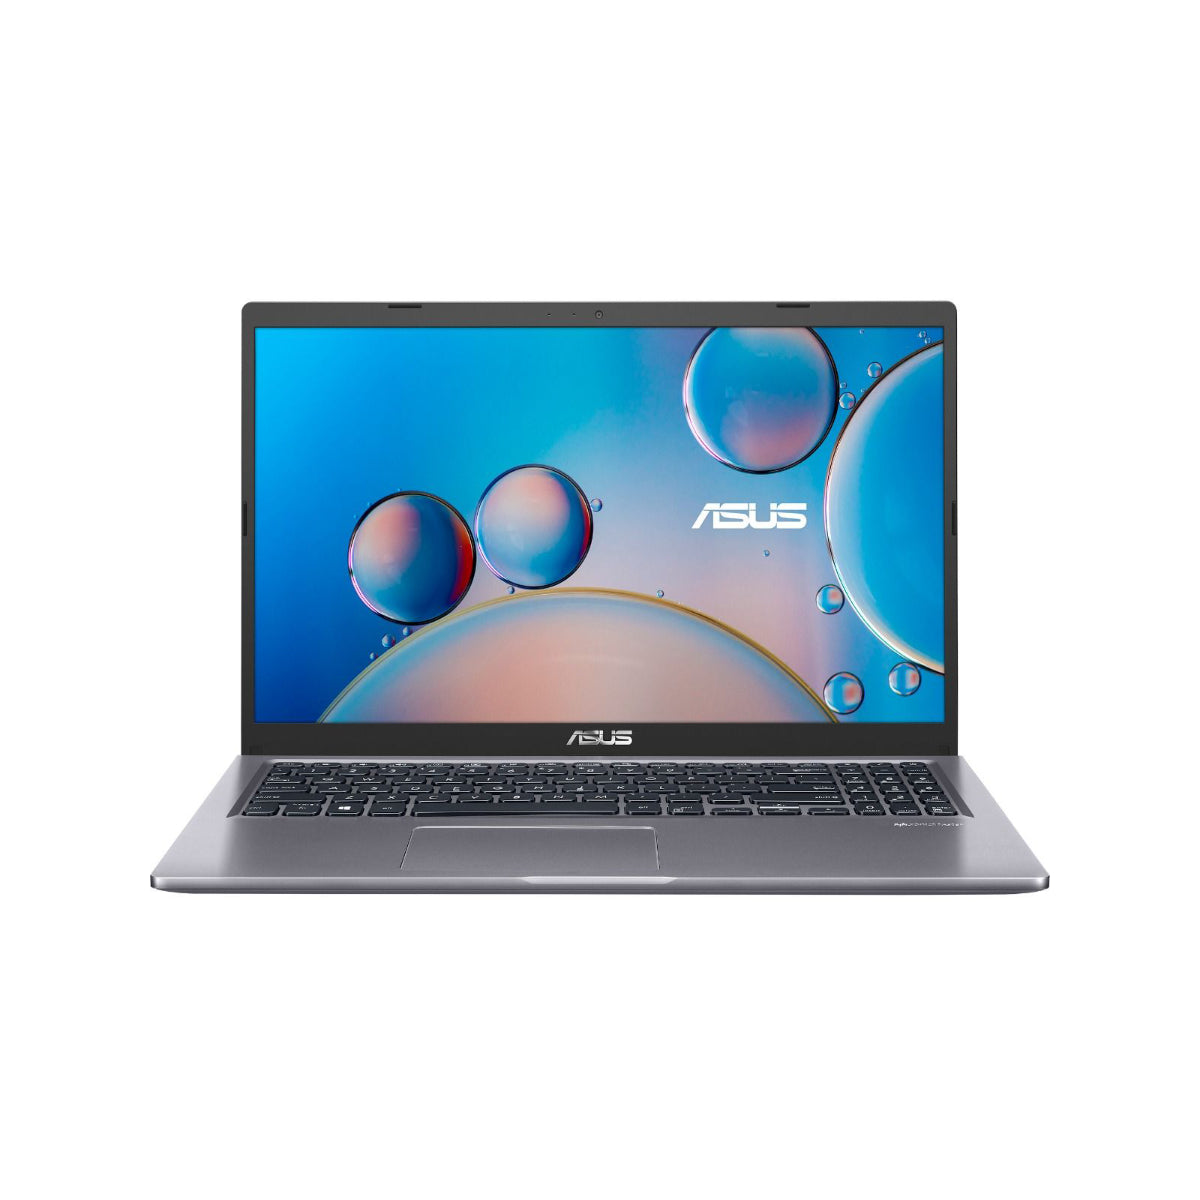 Asus Laptop Intel Celeron N4020 15.6 Inch Laptop